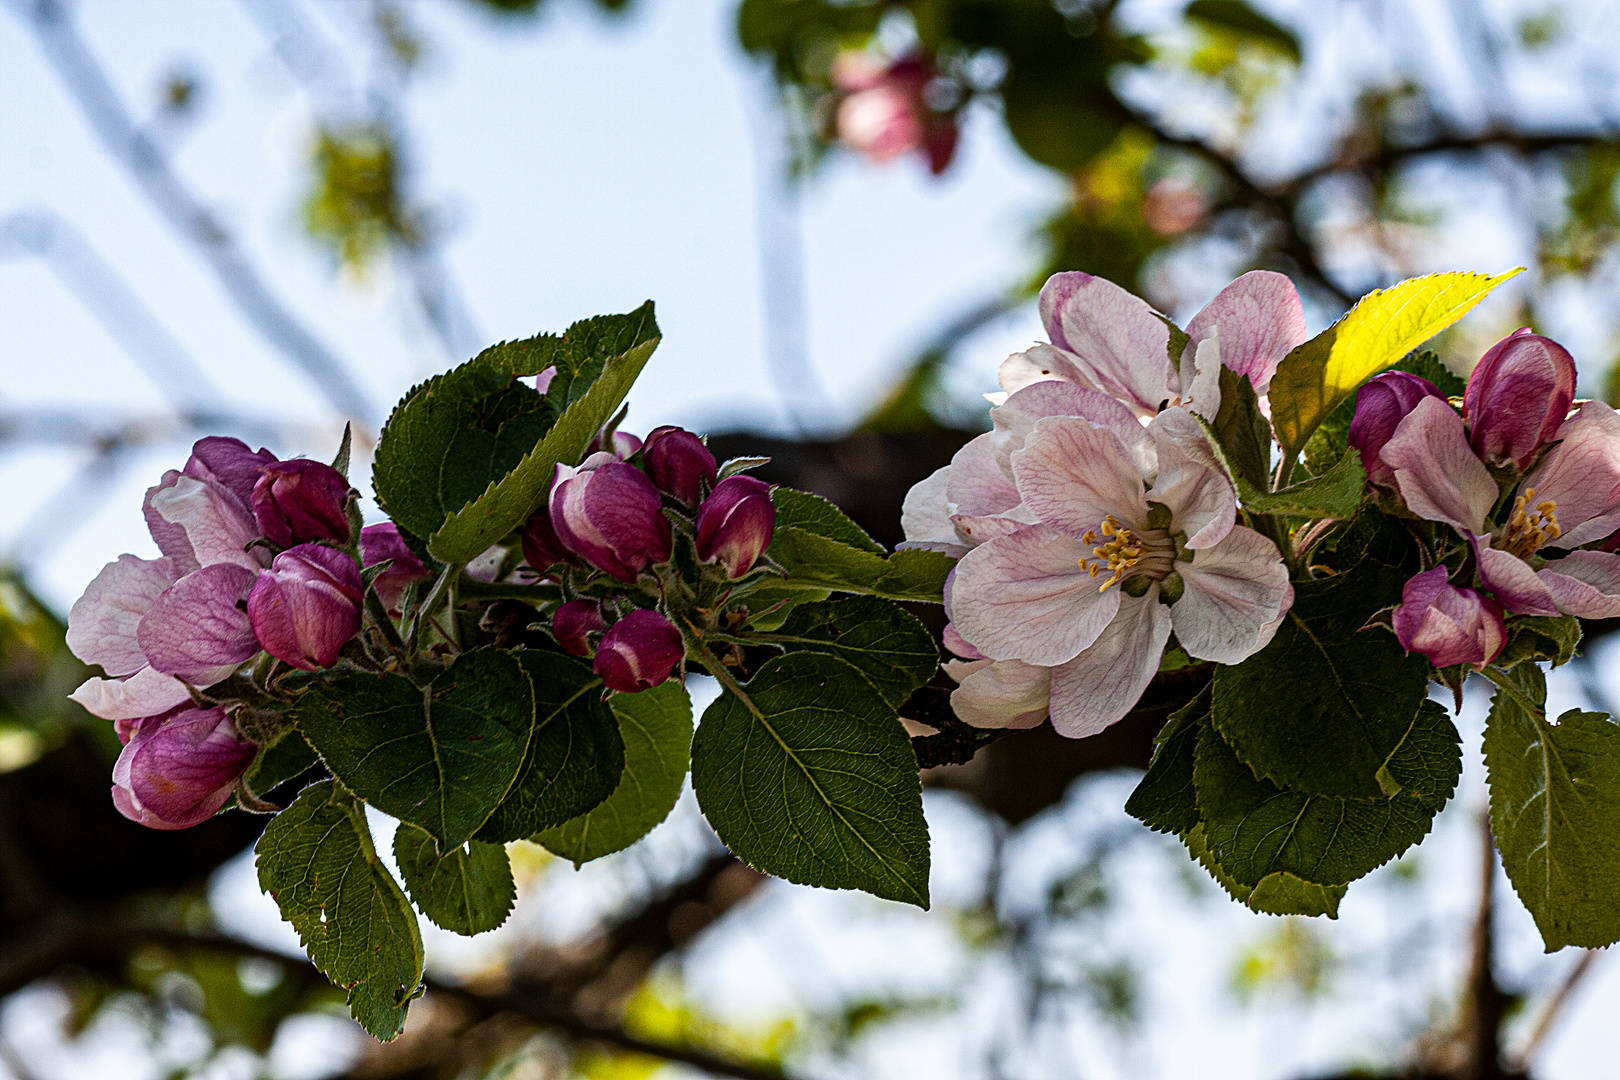 Tecklenburger Apfelblüte - einfach paradiesisch!